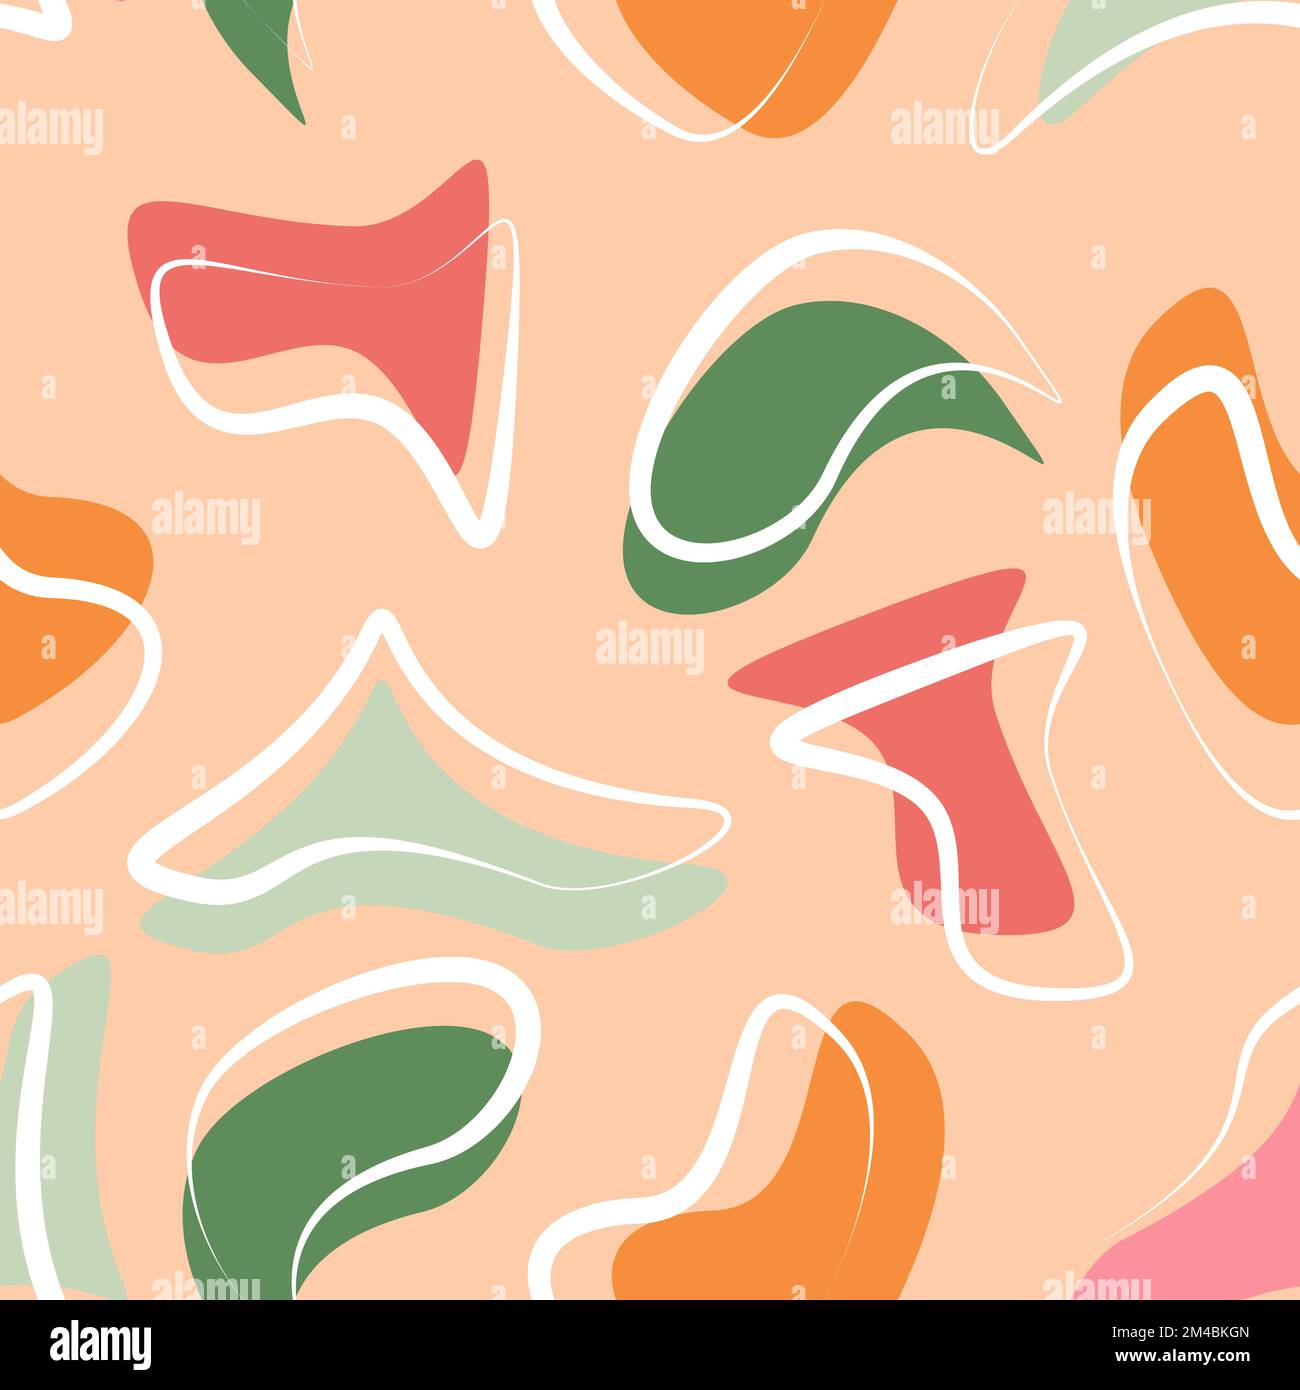 Abstraktes nahtloses Muster von farbigen organischen Formen, Flecken und weißen Pinselstrichen, Herbstfarben. Poster, Einband, Inneneinrichtung, Textilwaren Stock Vektor